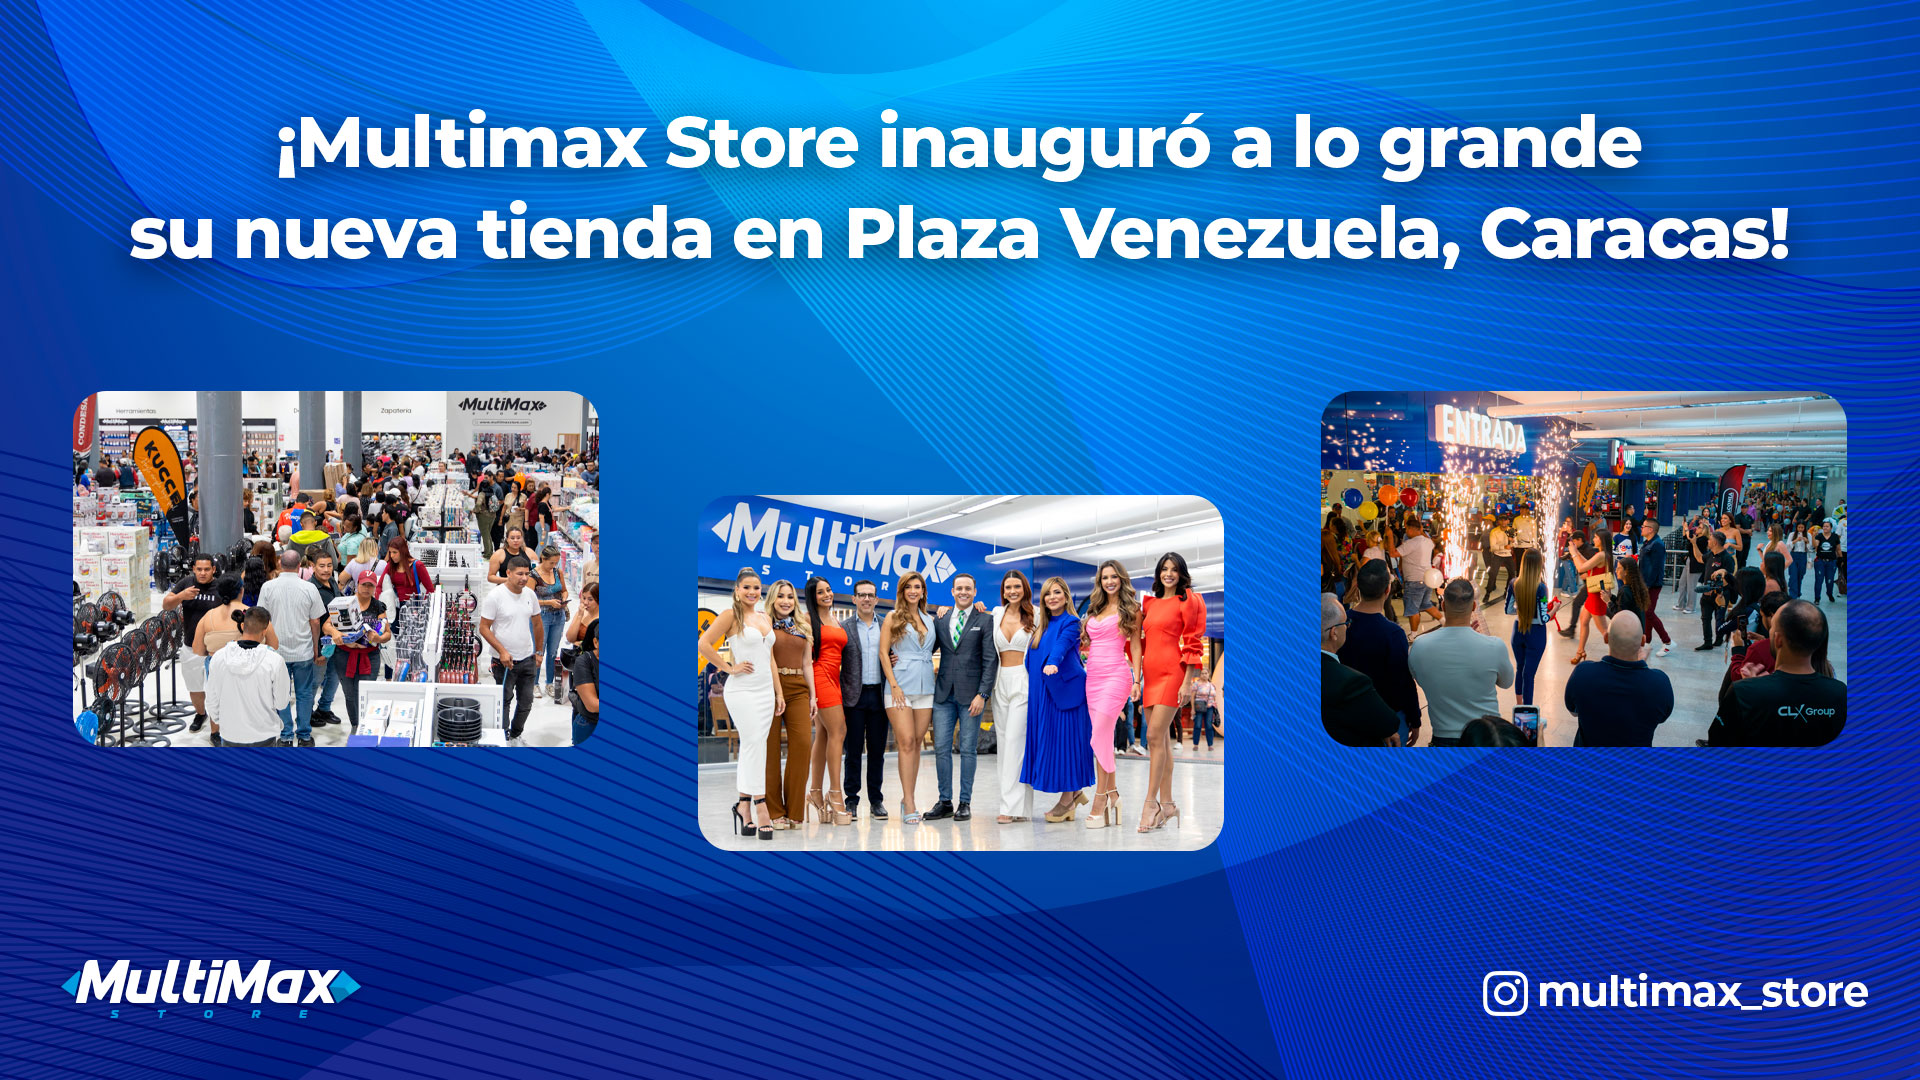 ¡Multimax Store inauguró a lo grande su nueva tienda en Plaza Venezuela, Caracas! 